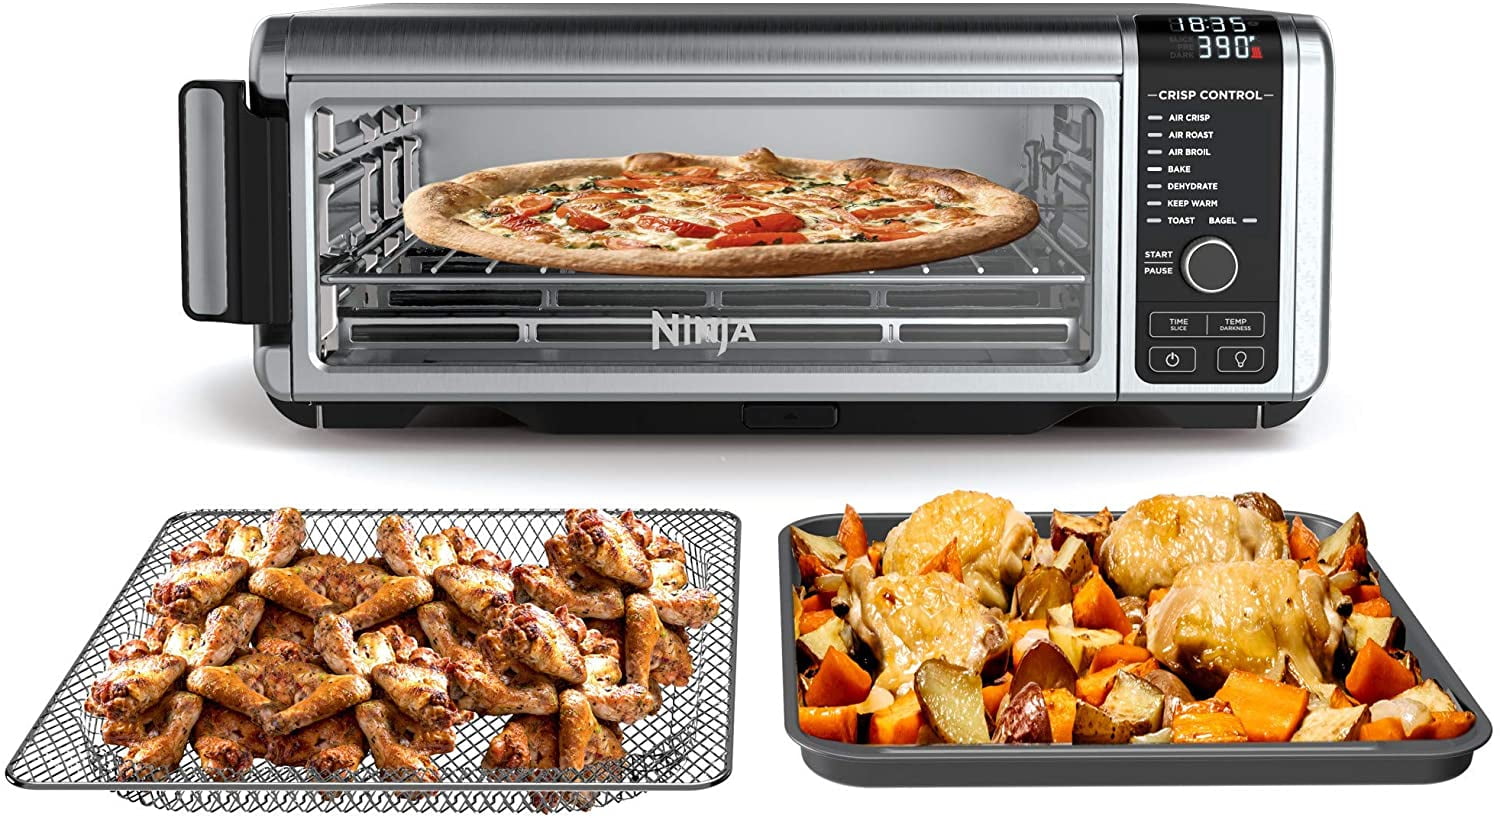 Ninja Foodi 6-in-1 Countertop Indoor Grill with 4-quart Air Fryer, Roast,  Bake, Broil, Dehydrate Black/Stainless Steel EG201 - Best Buy